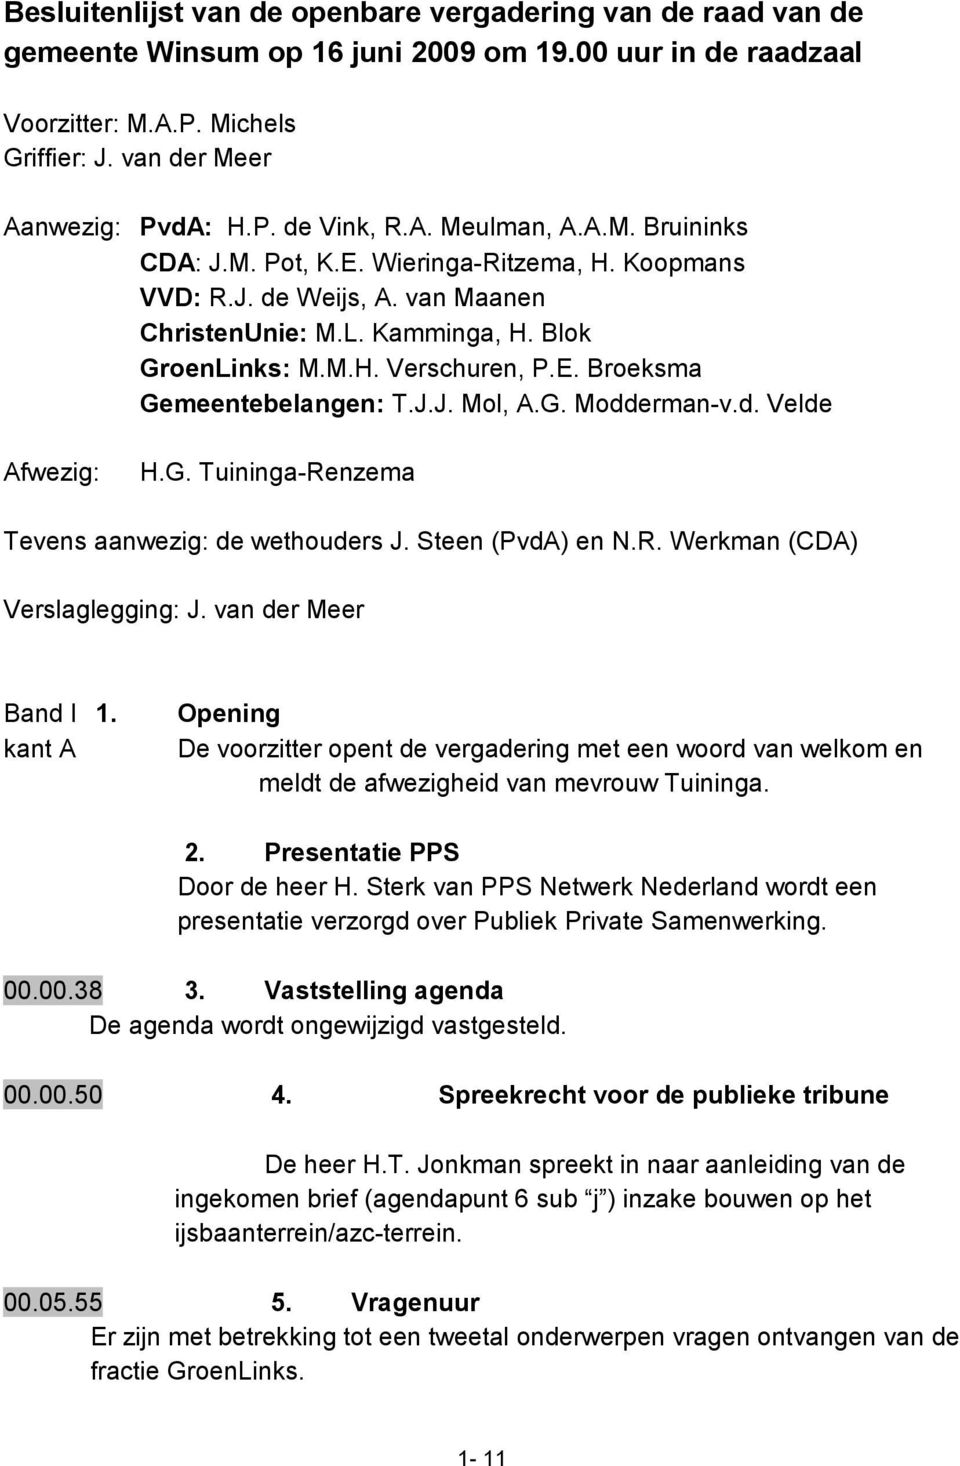 J.J. Mol, A.G. Modderman-v.d. Velde Afwezig: H.G. Tuininga-Renzema Tevens aanwezig: de wethouders J. Steen (PvdA) en N.R. Werkman (CDA) Verslaglegging: J. van der Meer Band I 1.